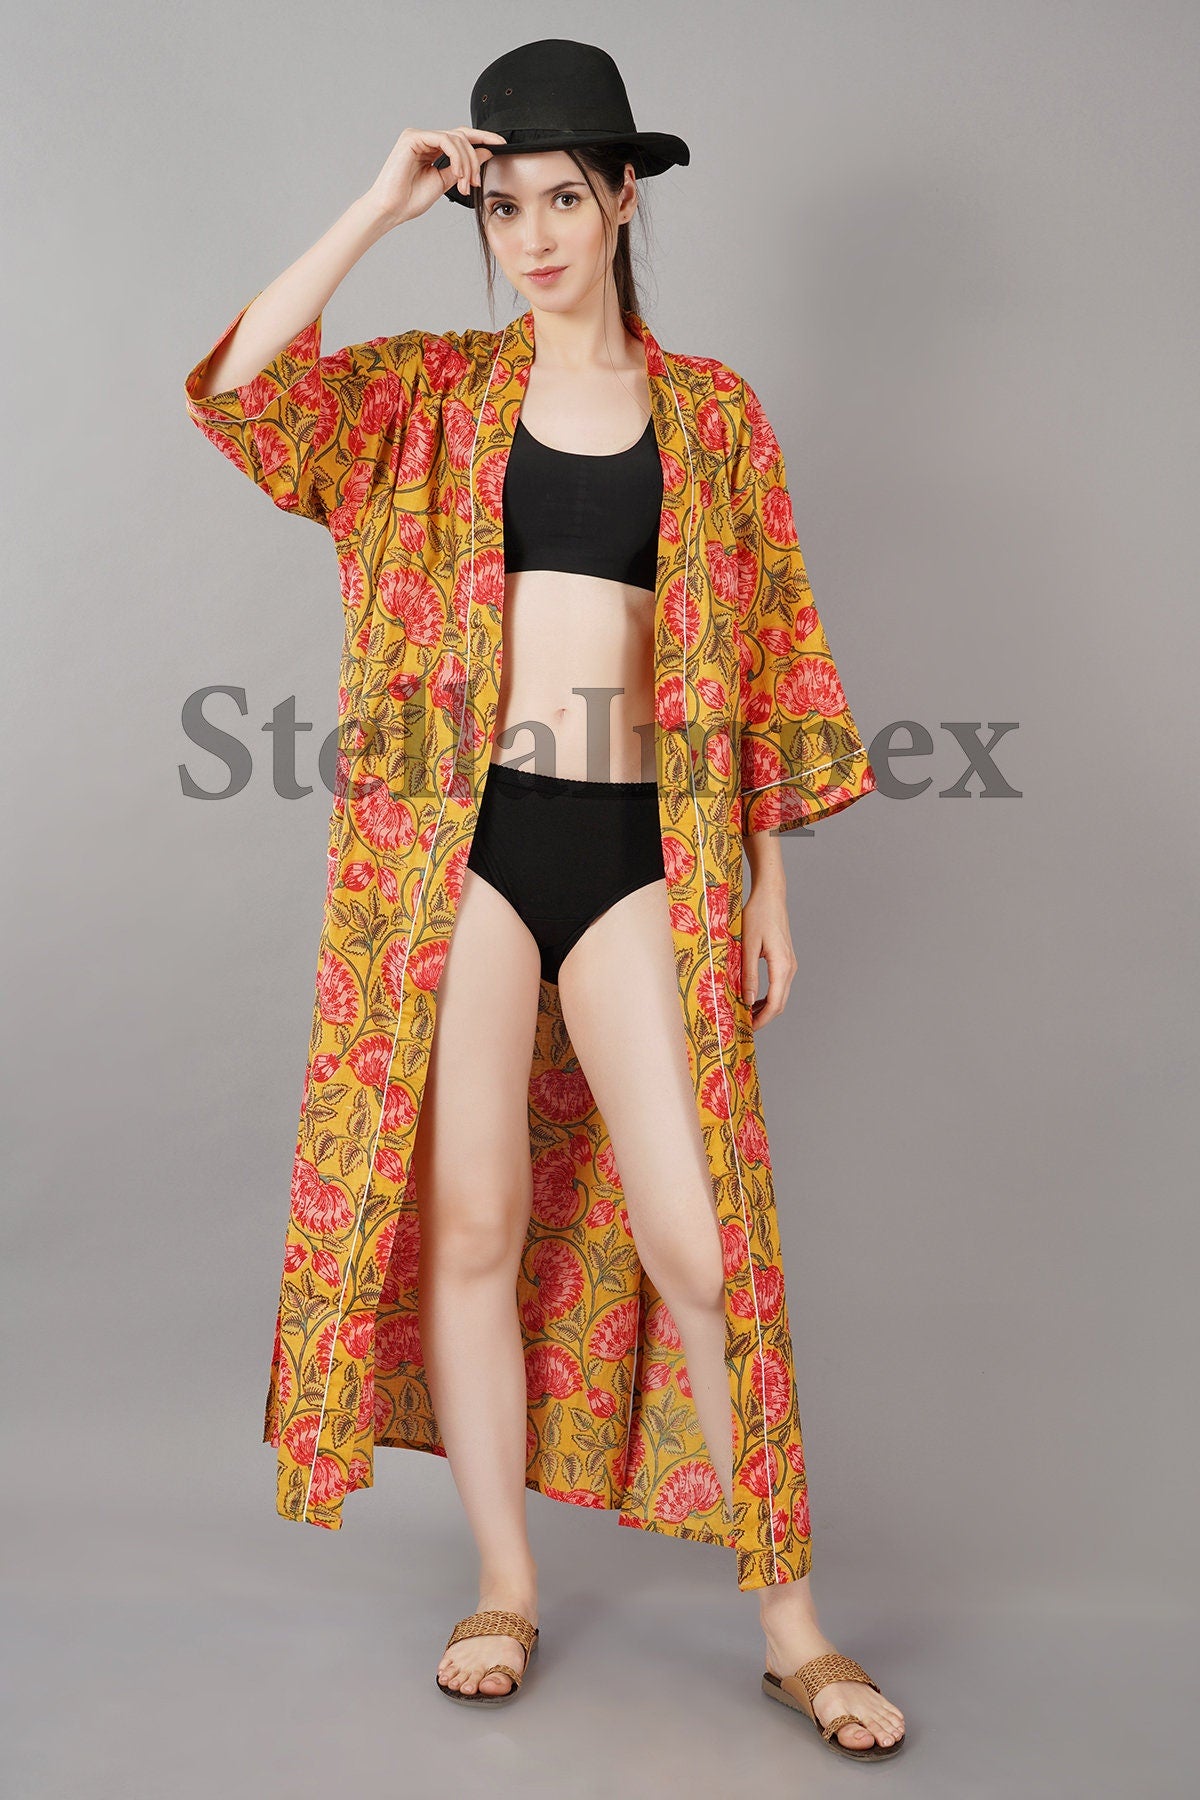 Trendy Cotton Kimono Elegant Yellow & Pink Floral Bathrobe Resort Wear Beach Bikini Cover-ups Boho Kimono Bathrobe, Gift for Her